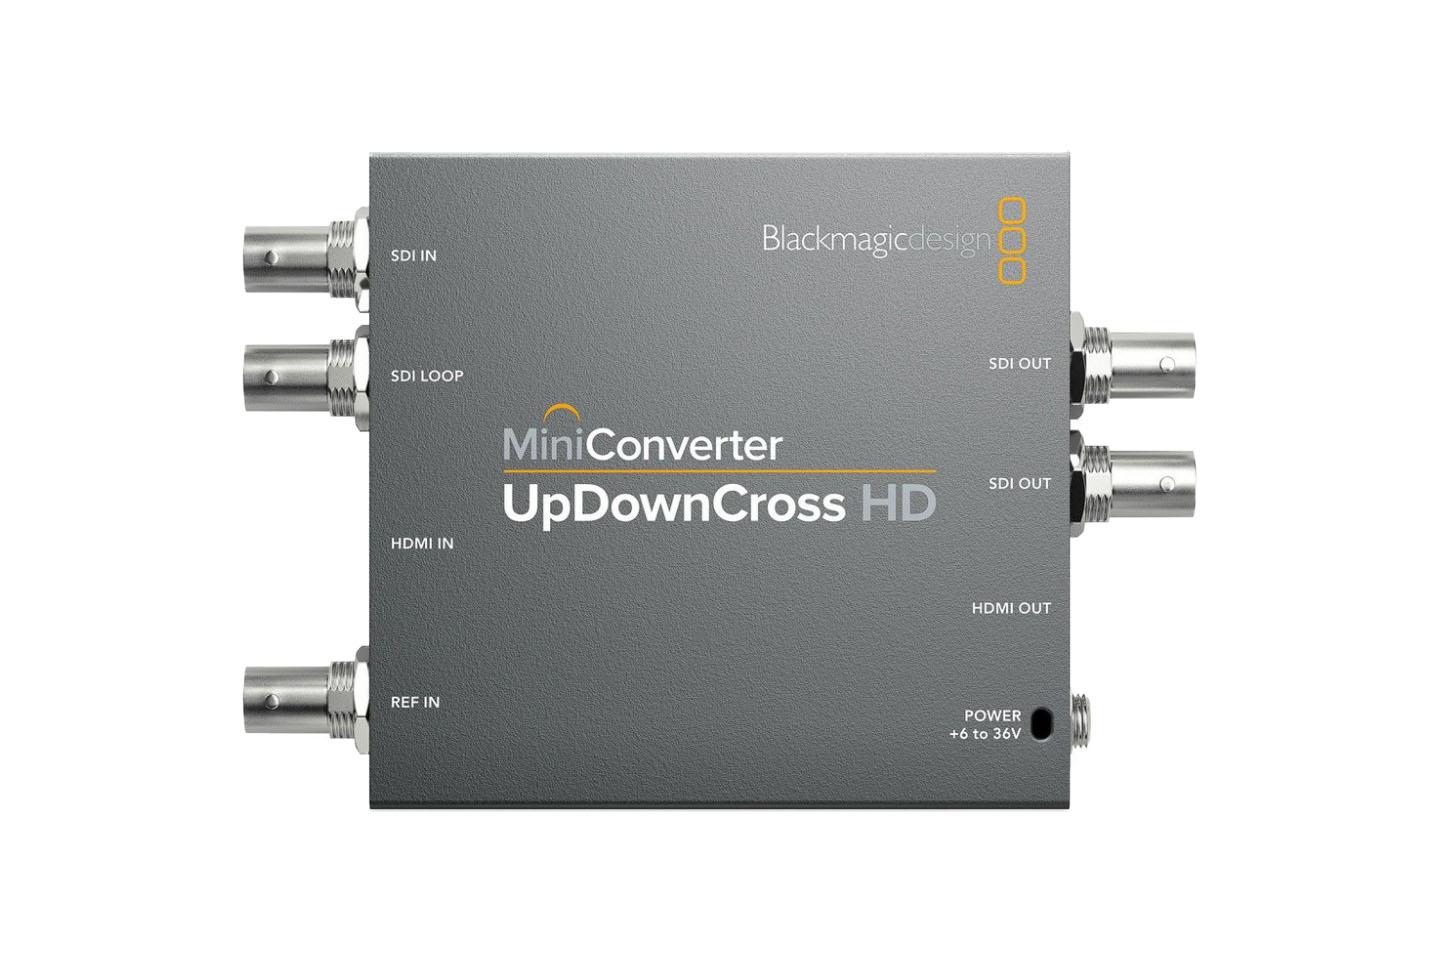 BM UpDownCross HD(miniConverter)